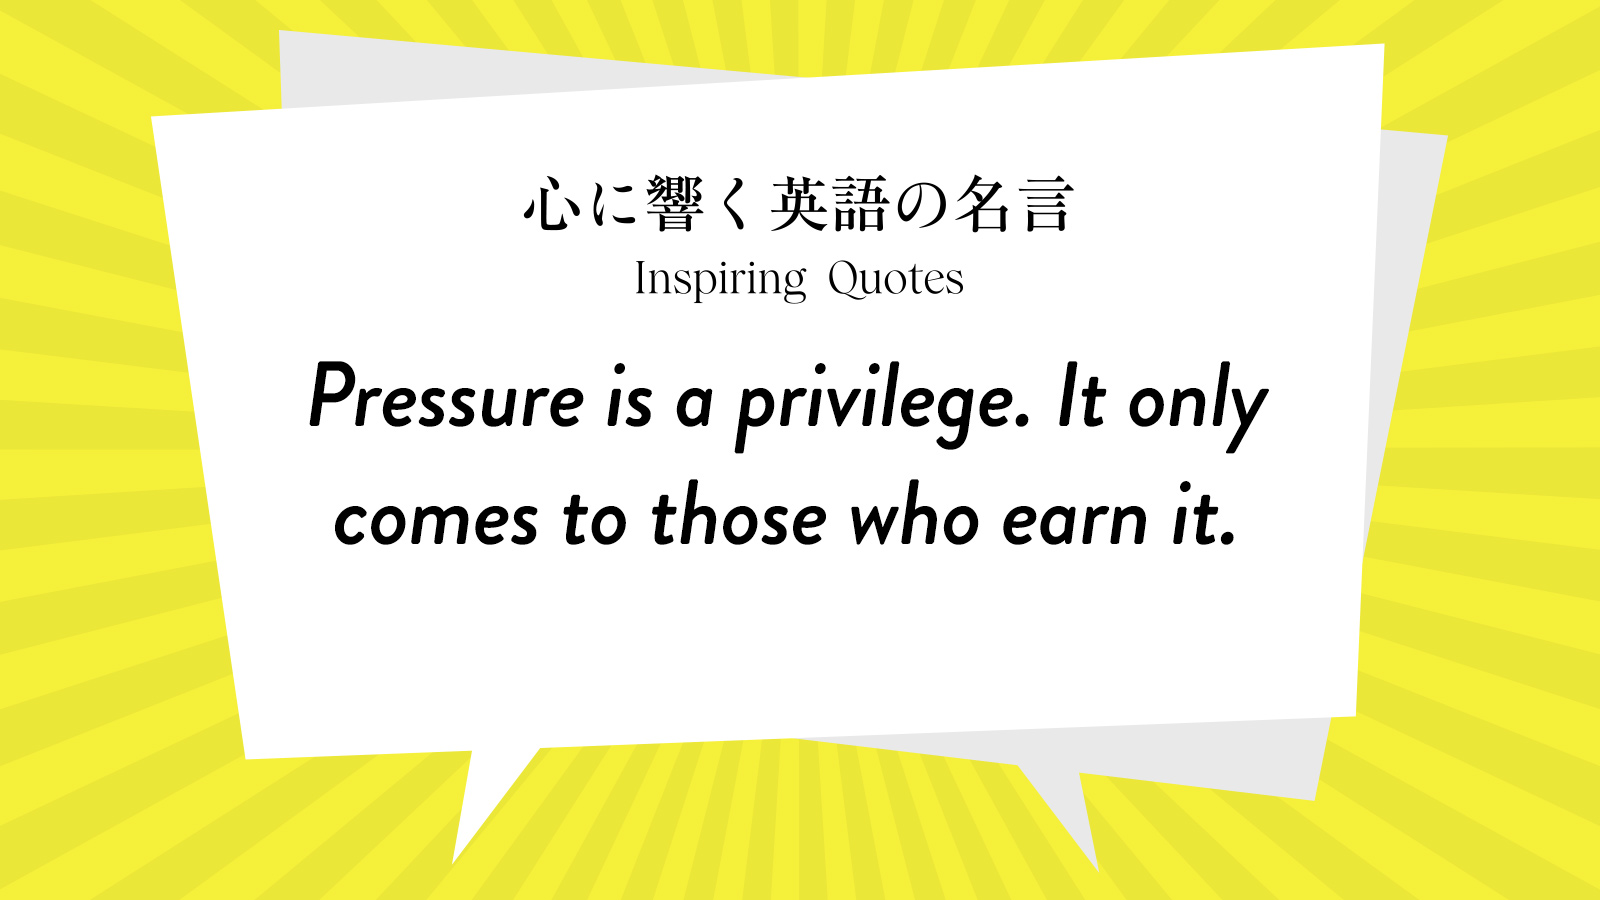 今週の名言 “Pressure is a privilege. It only comes to those who earn it.” | Inspiring Quotes: 心に響く英語の名言